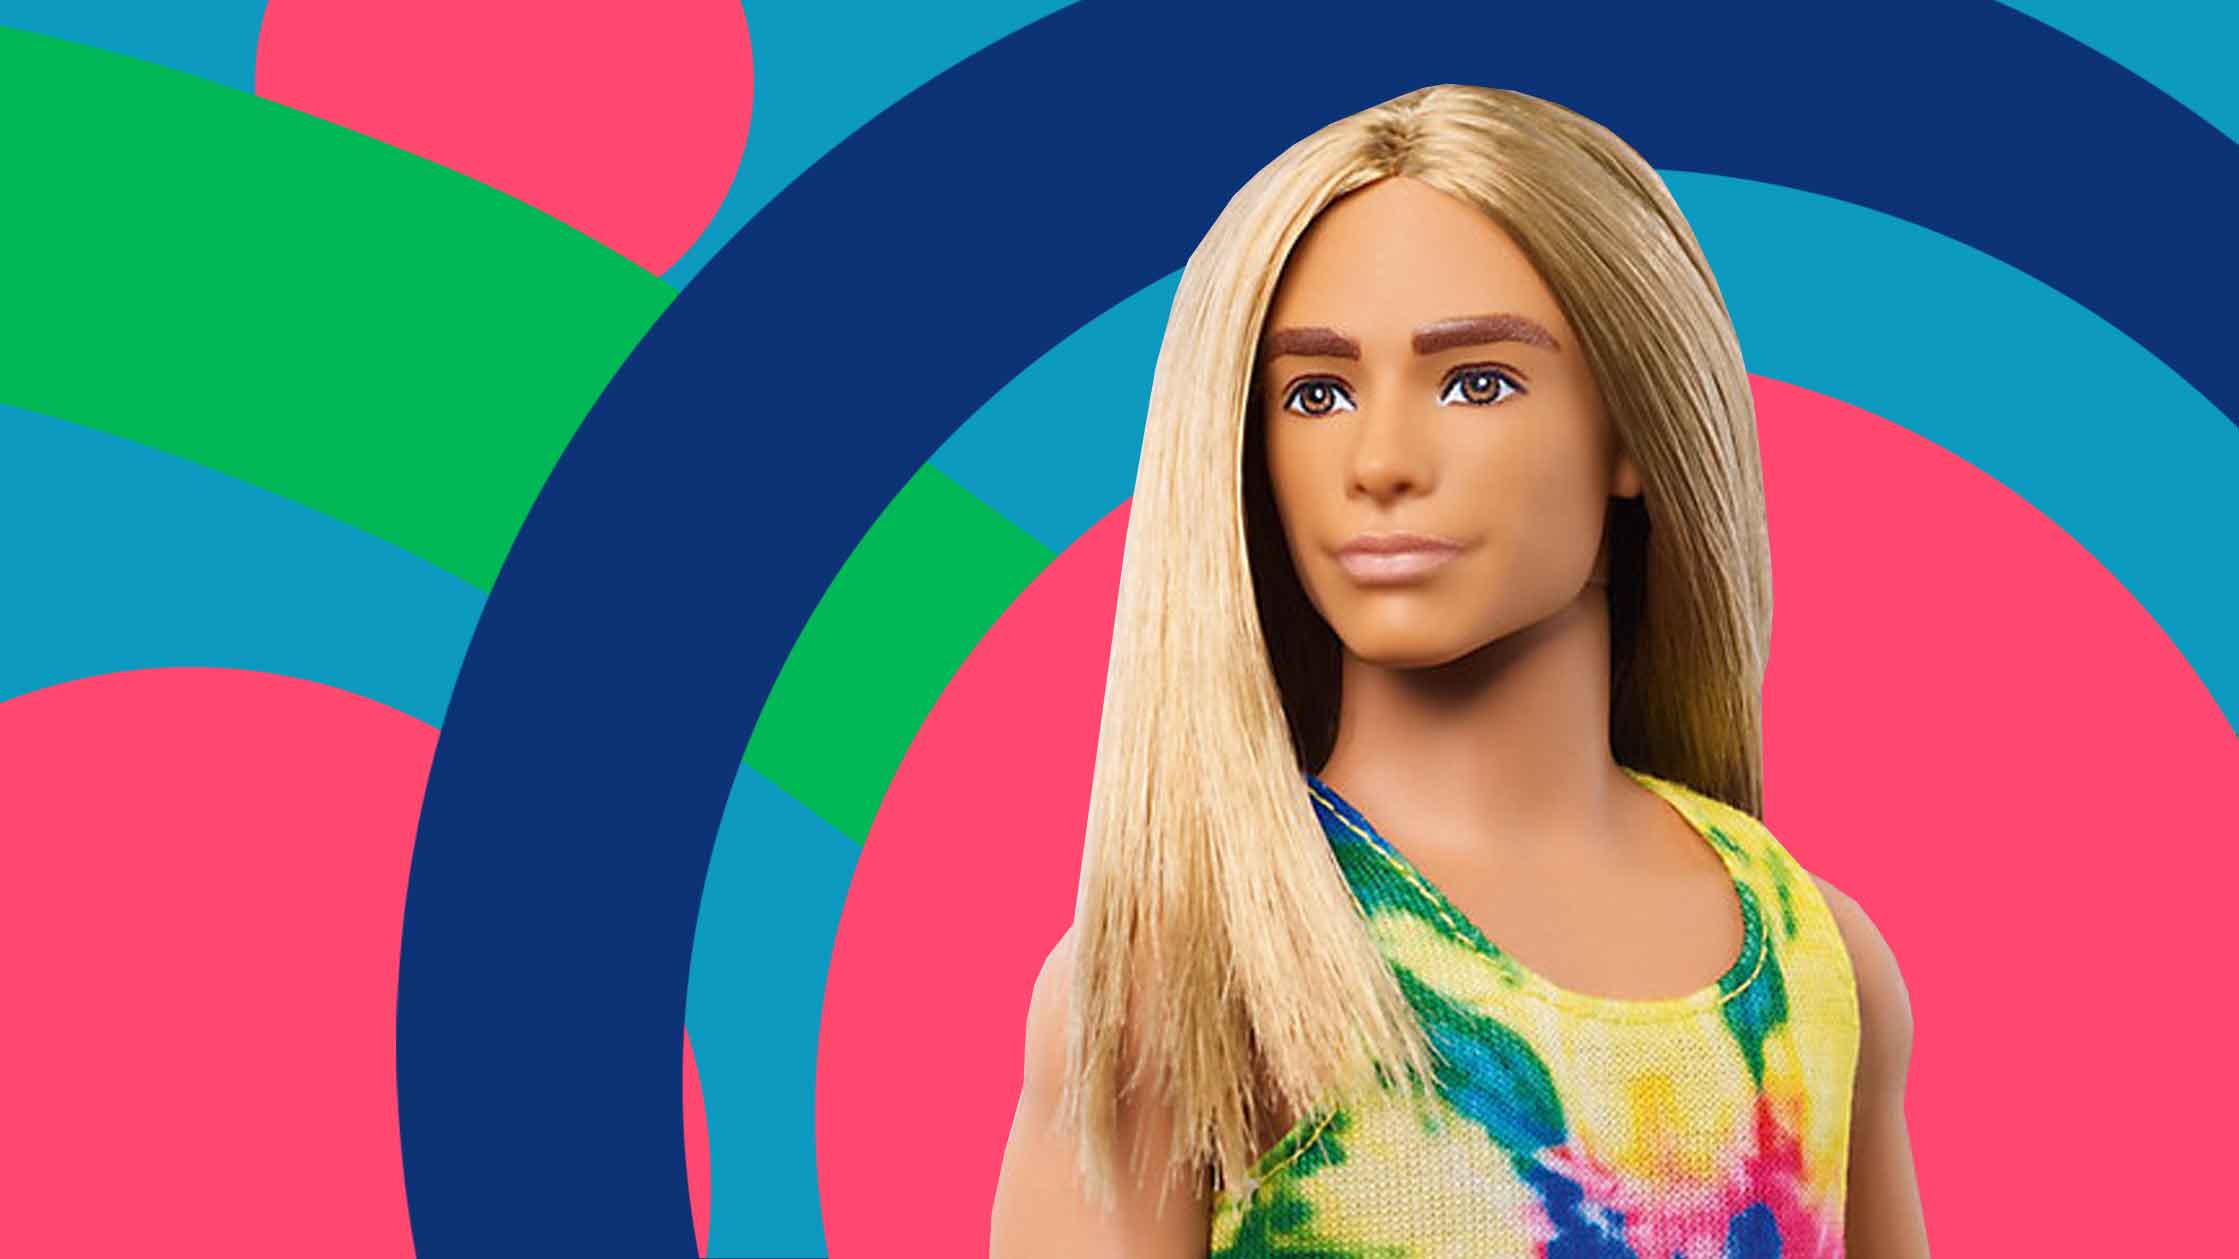 Разбираемся, кому не угодила нестандартная кукла Барби с длинными волосами и пухлыми губами Коллаж: © Daily Storm